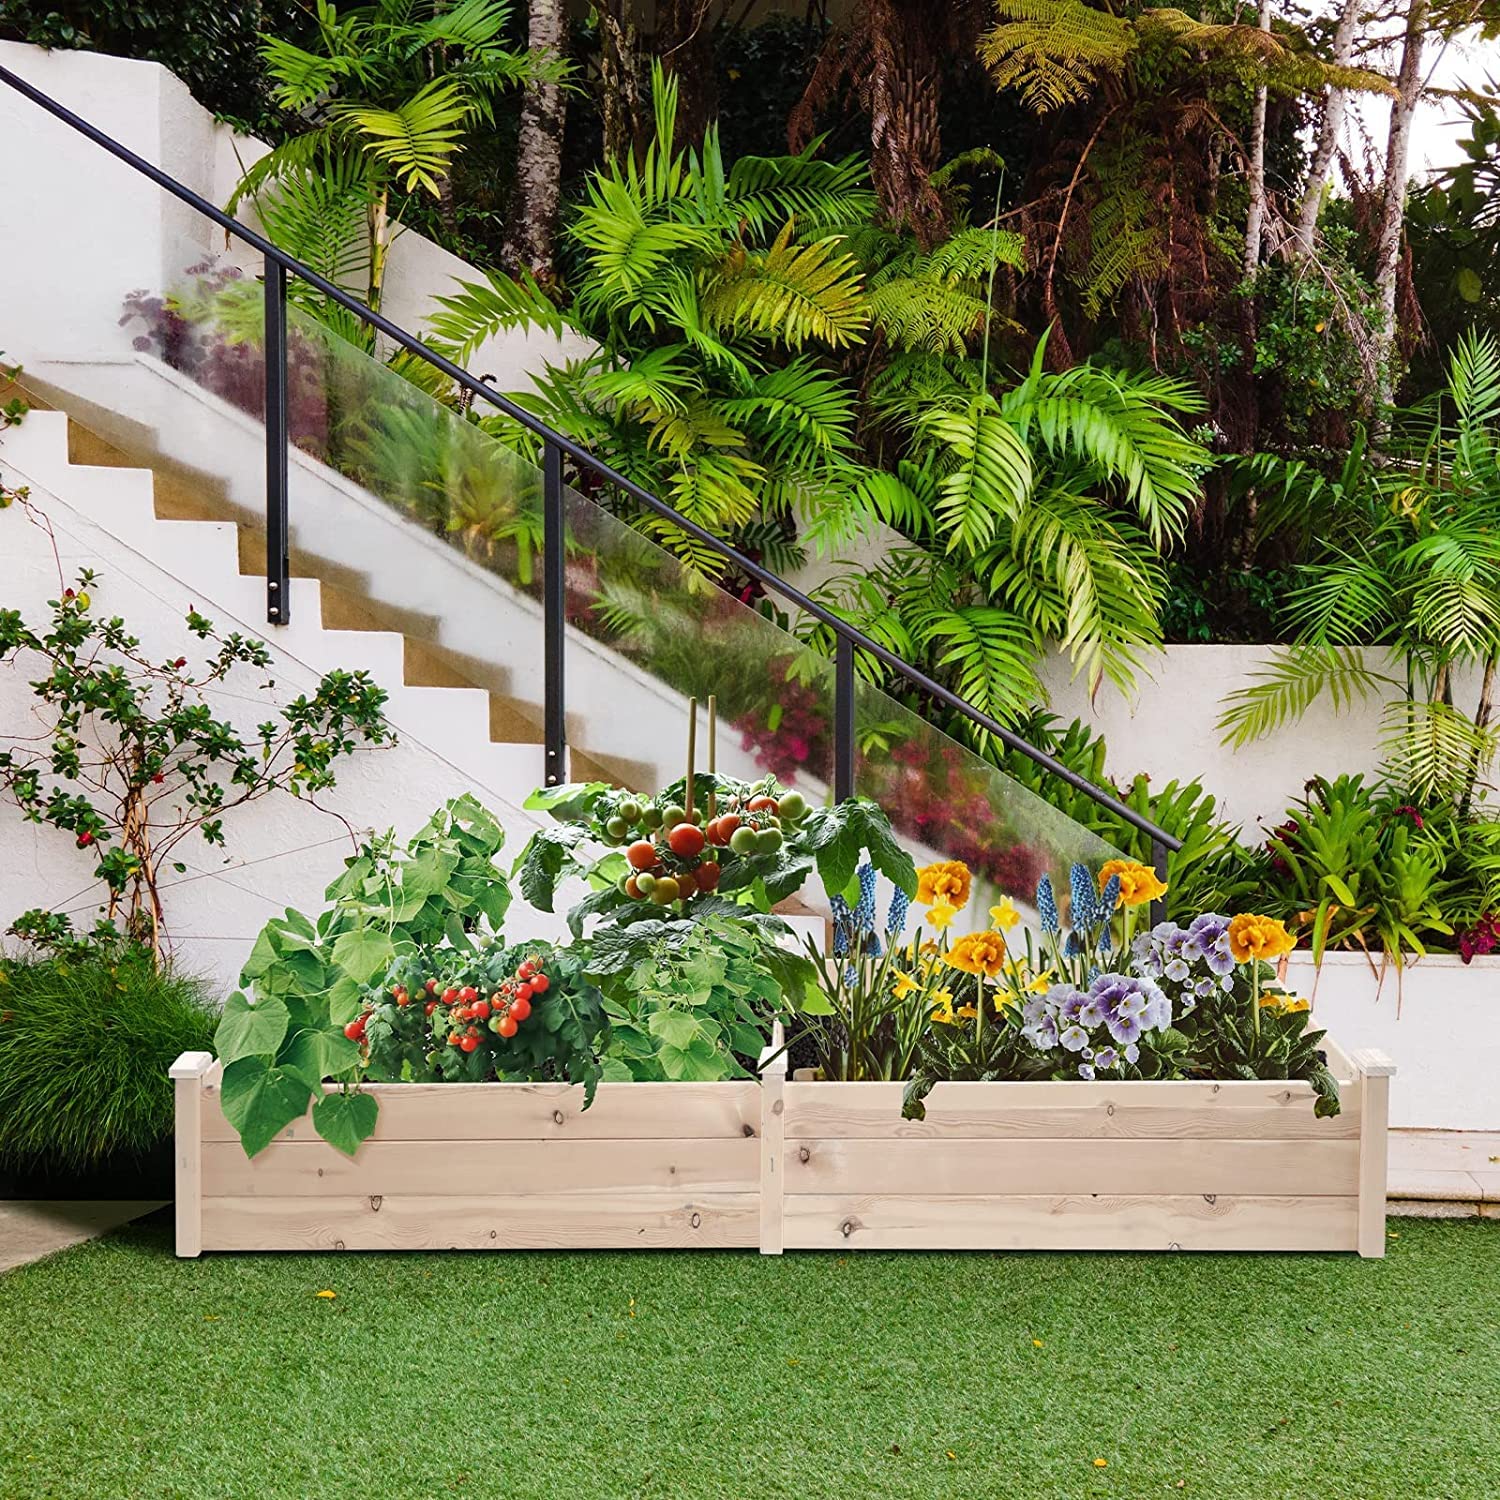 Oakmont Pure Wooden Raised Garden Bed 8ft Planter Box Kit for Vegetables Herbs, Flowers Natural